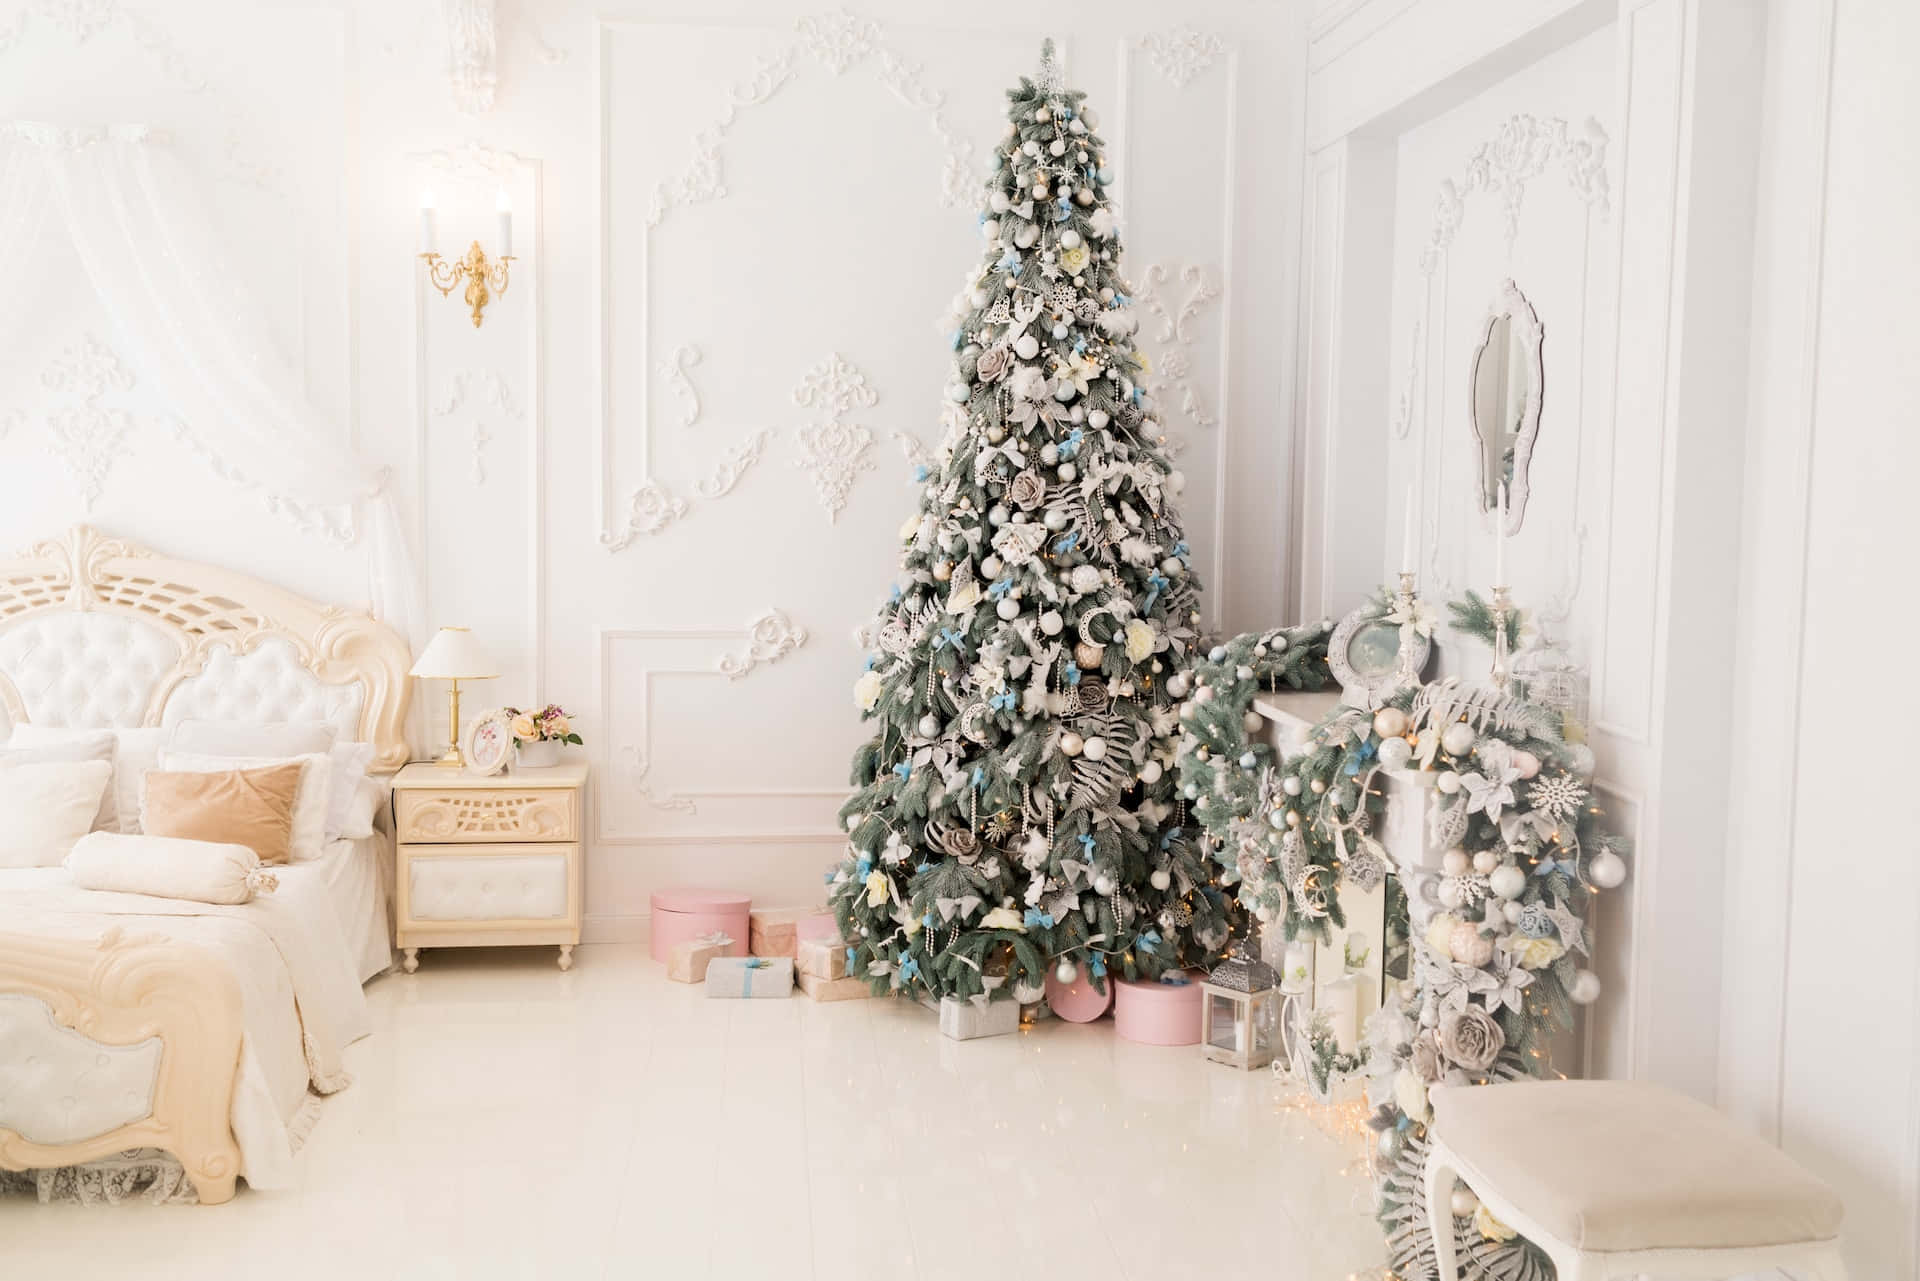 Giv dit system et festligt pift af julestemning med denne Festive Aesthetic Christmas Tree Wallpaper! Wallpaper